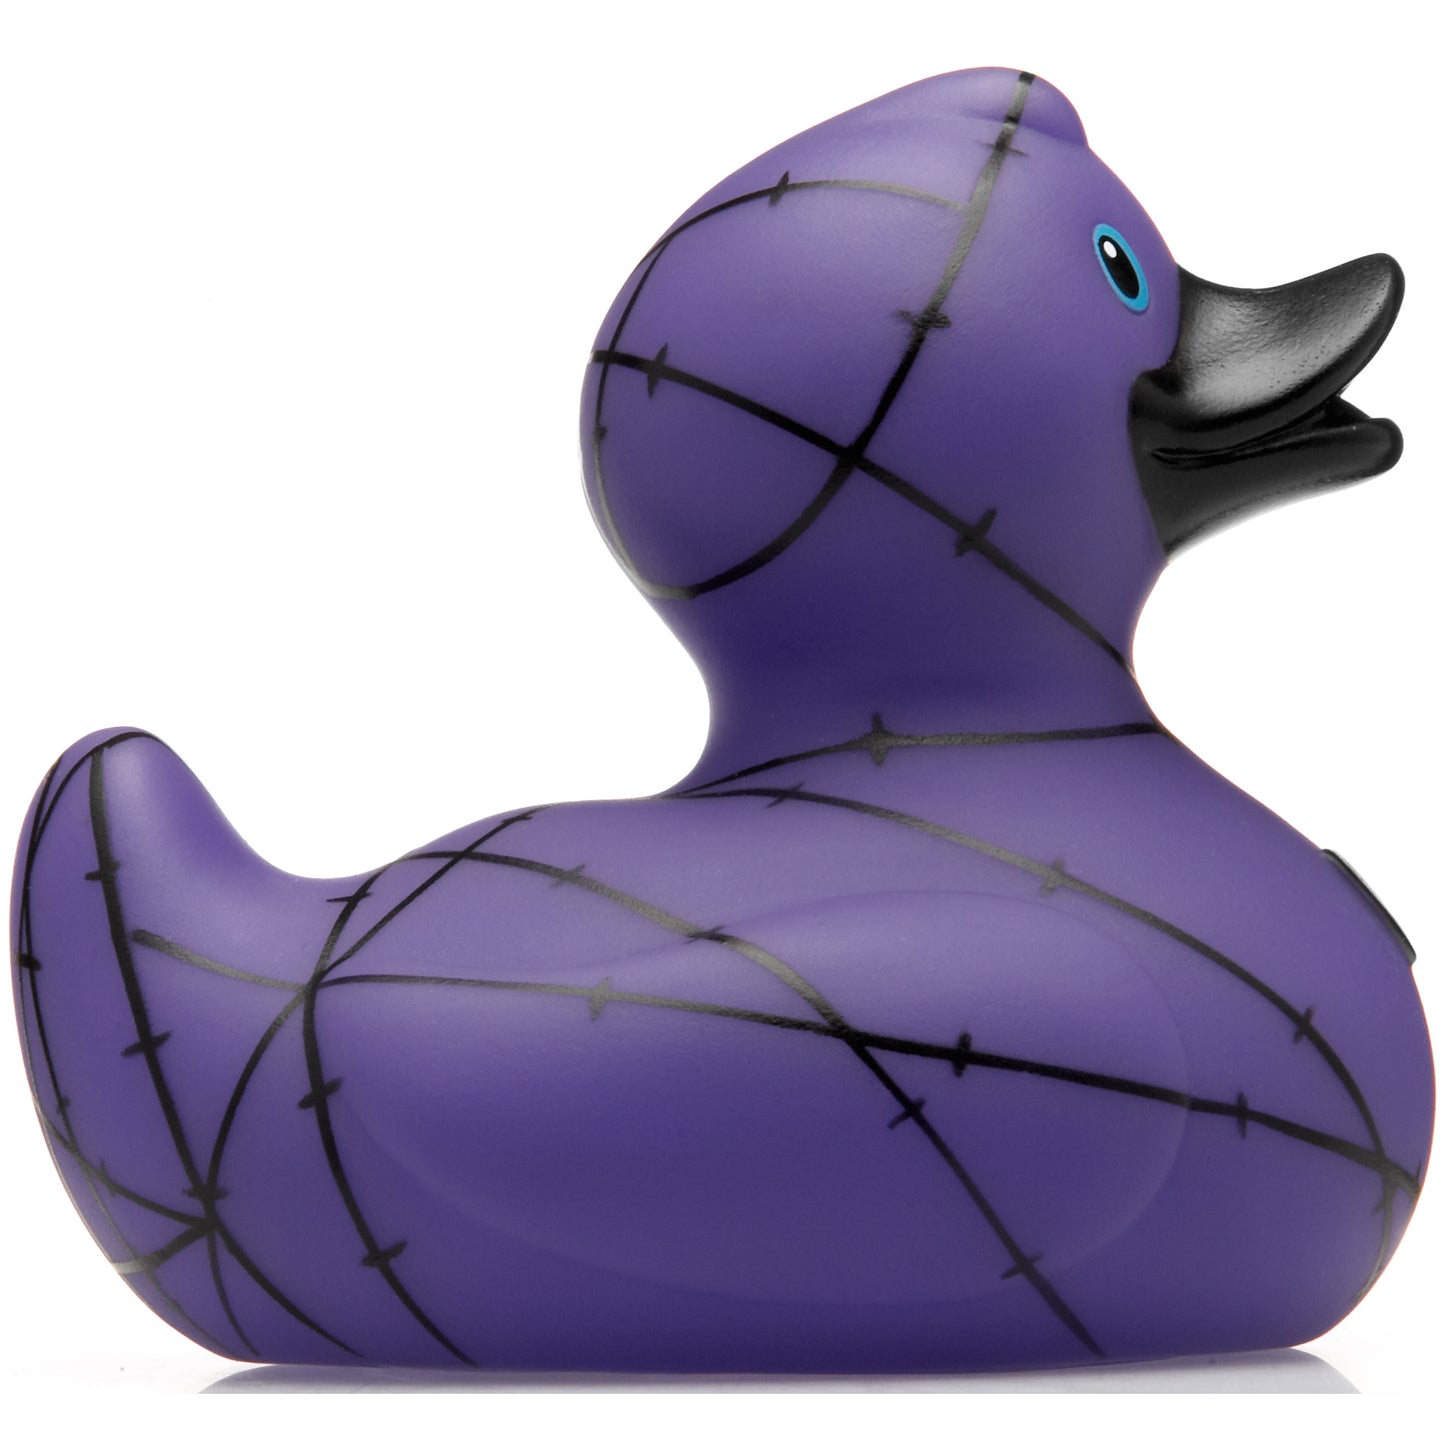 Gothic duck